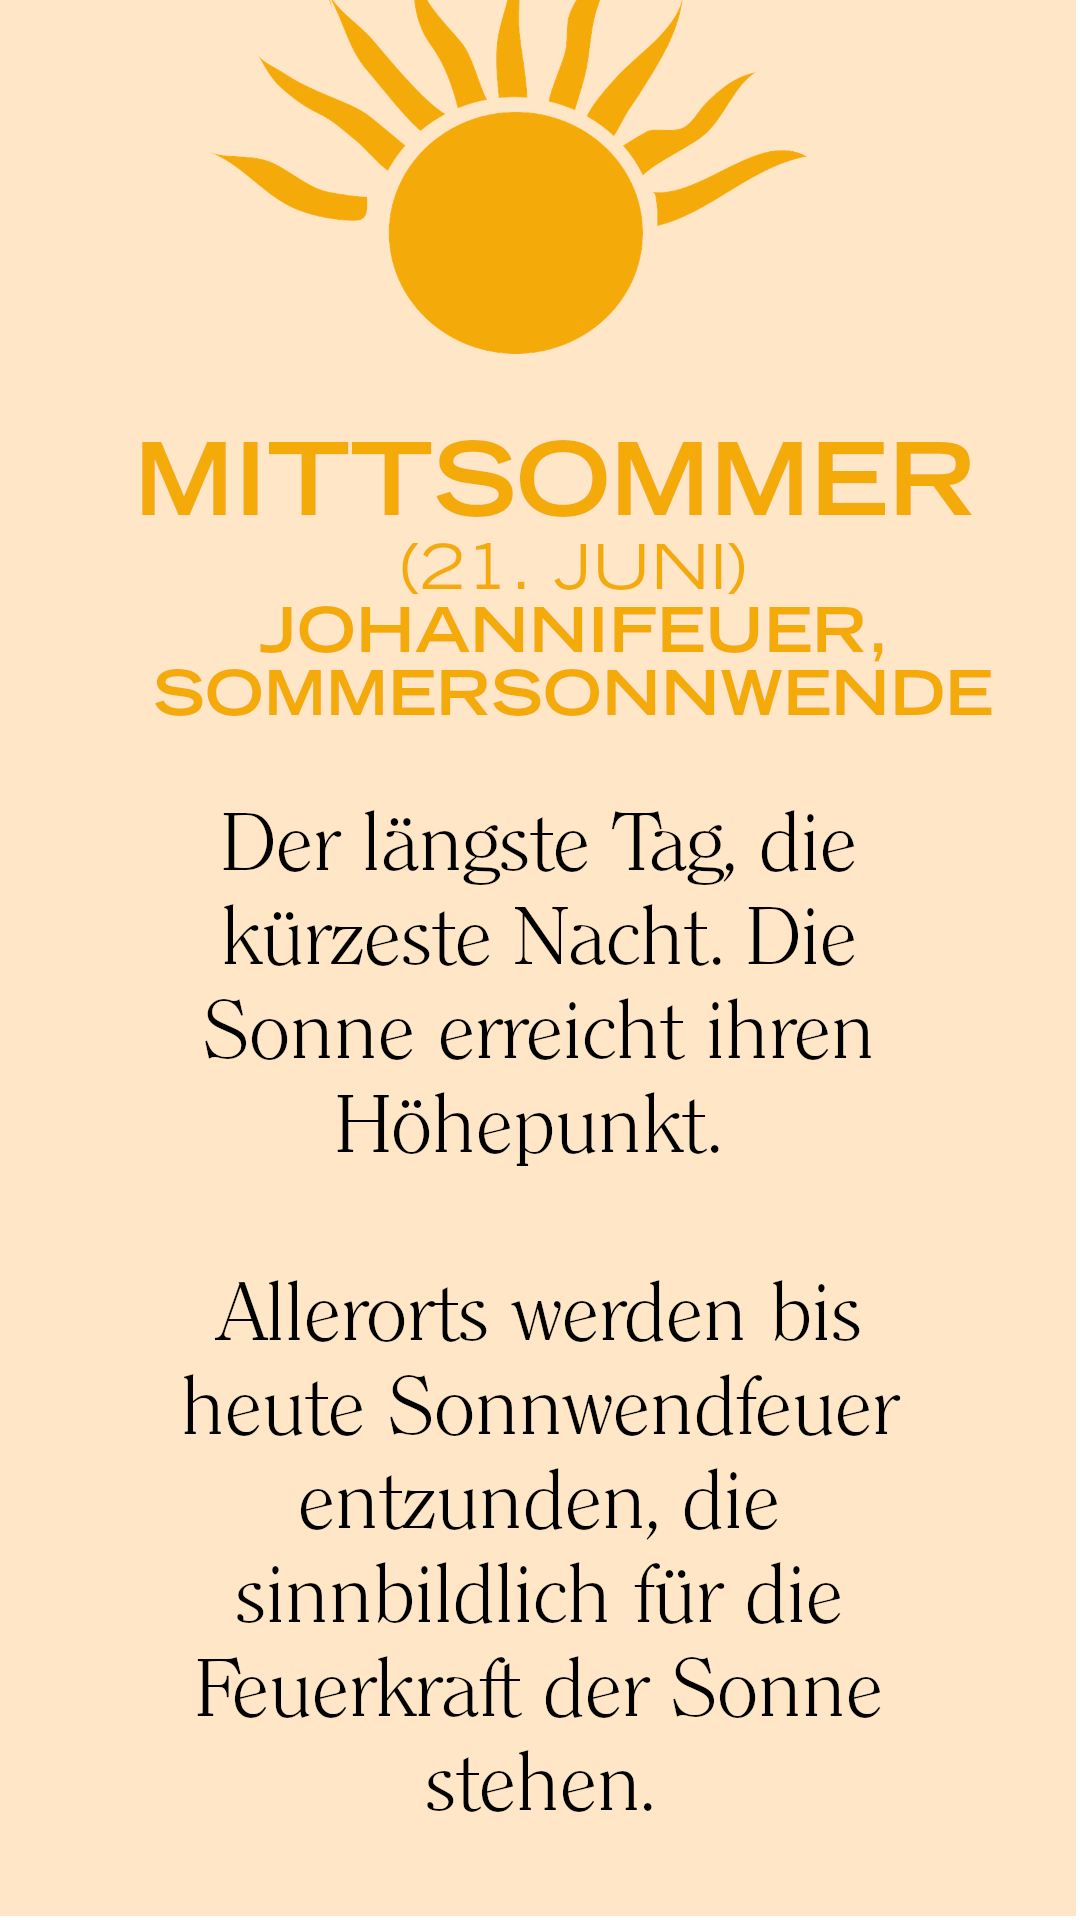 Mittsommer/Johannifeuer